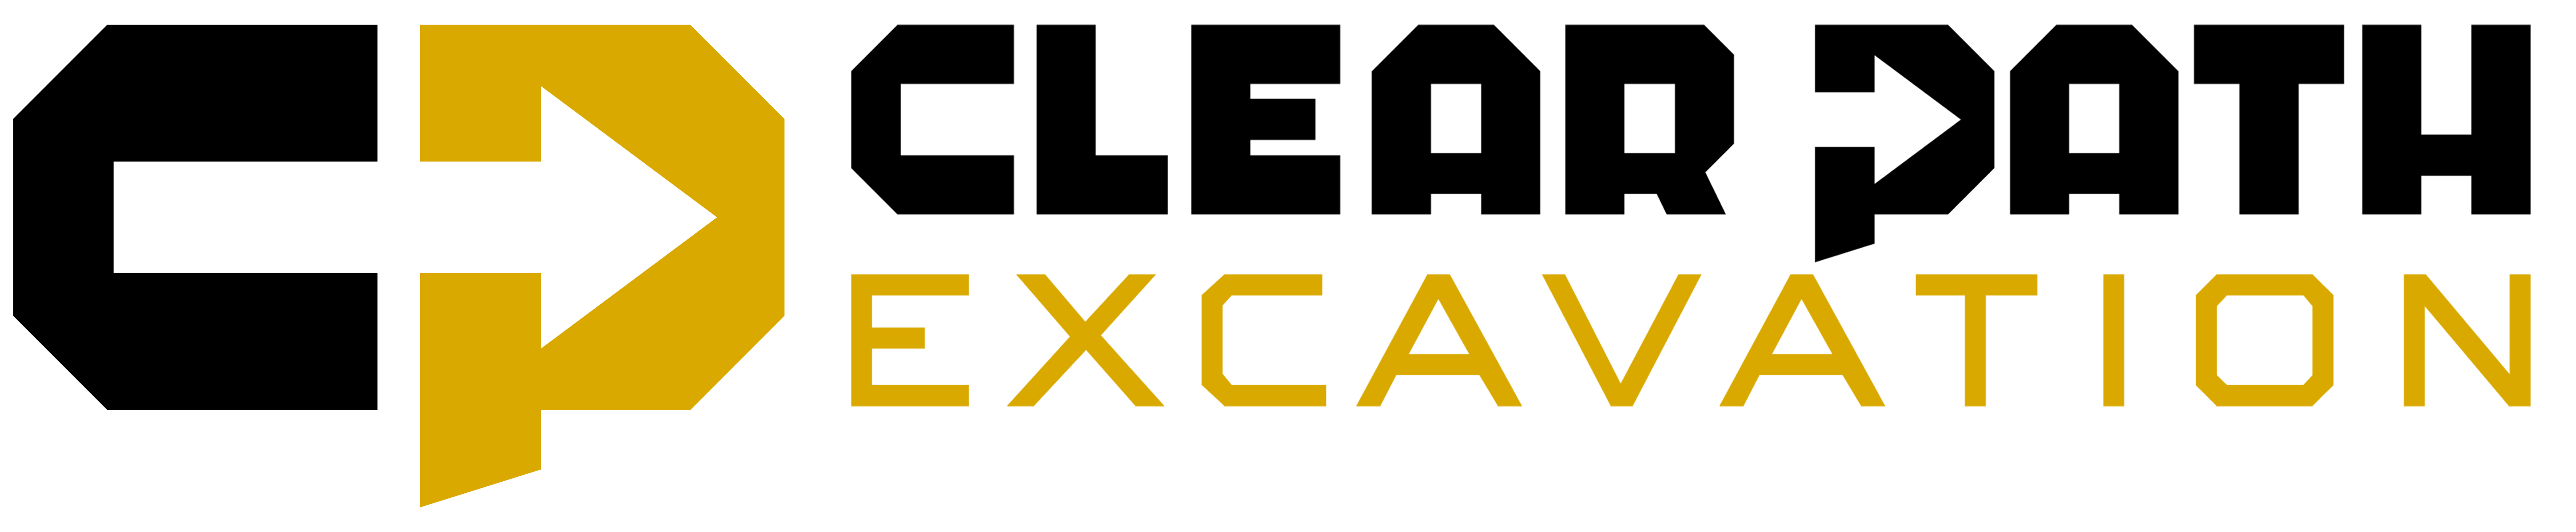 Clear Path Excavation LLC Logo